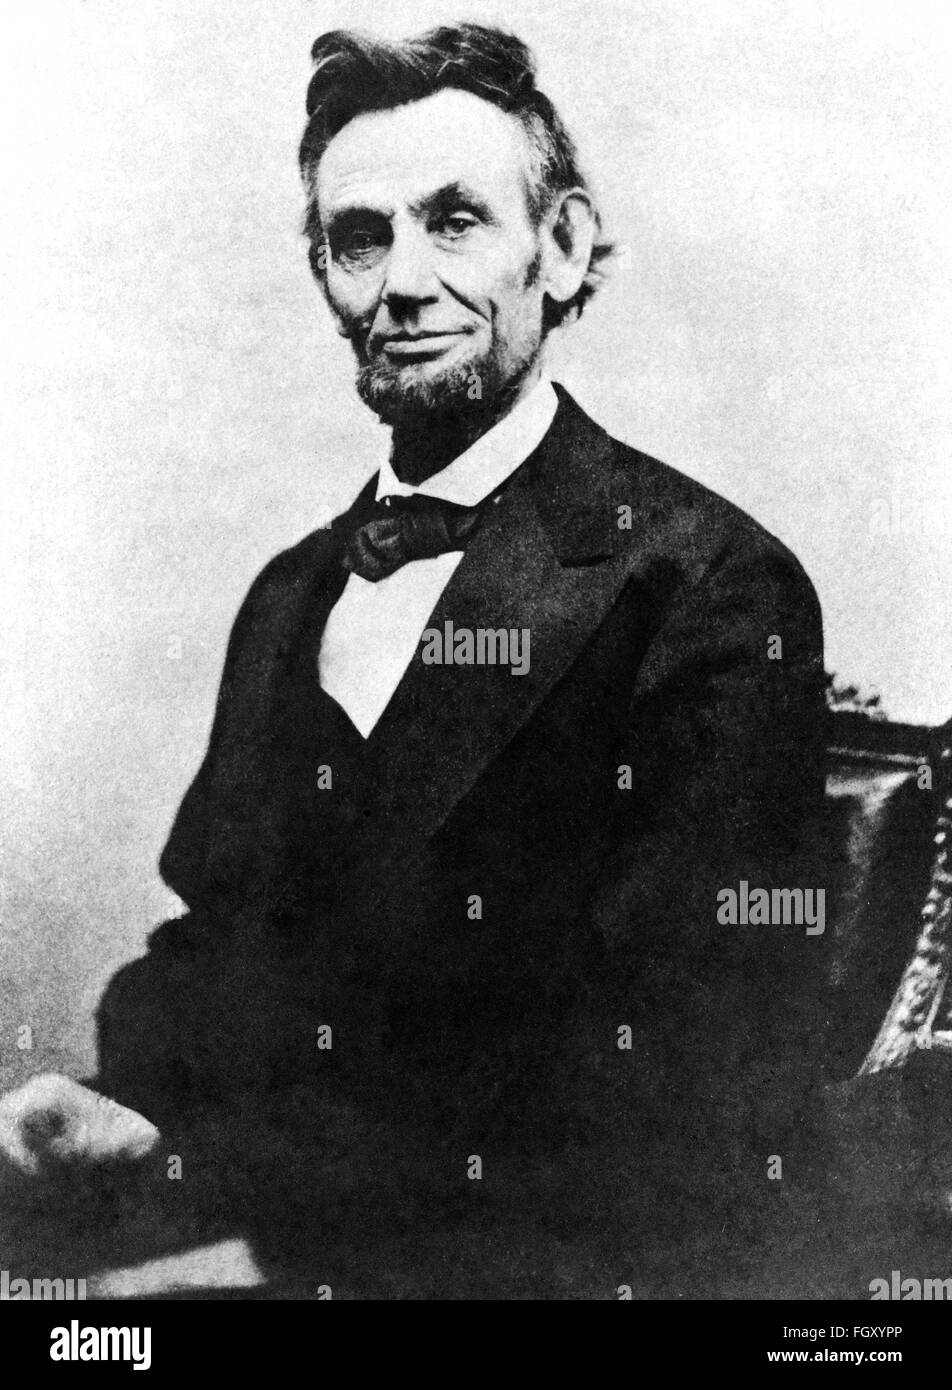 Retrato fotográfico del Presidente de los Estados Unidos Abraham Lincoln en 1865. Foto de stock